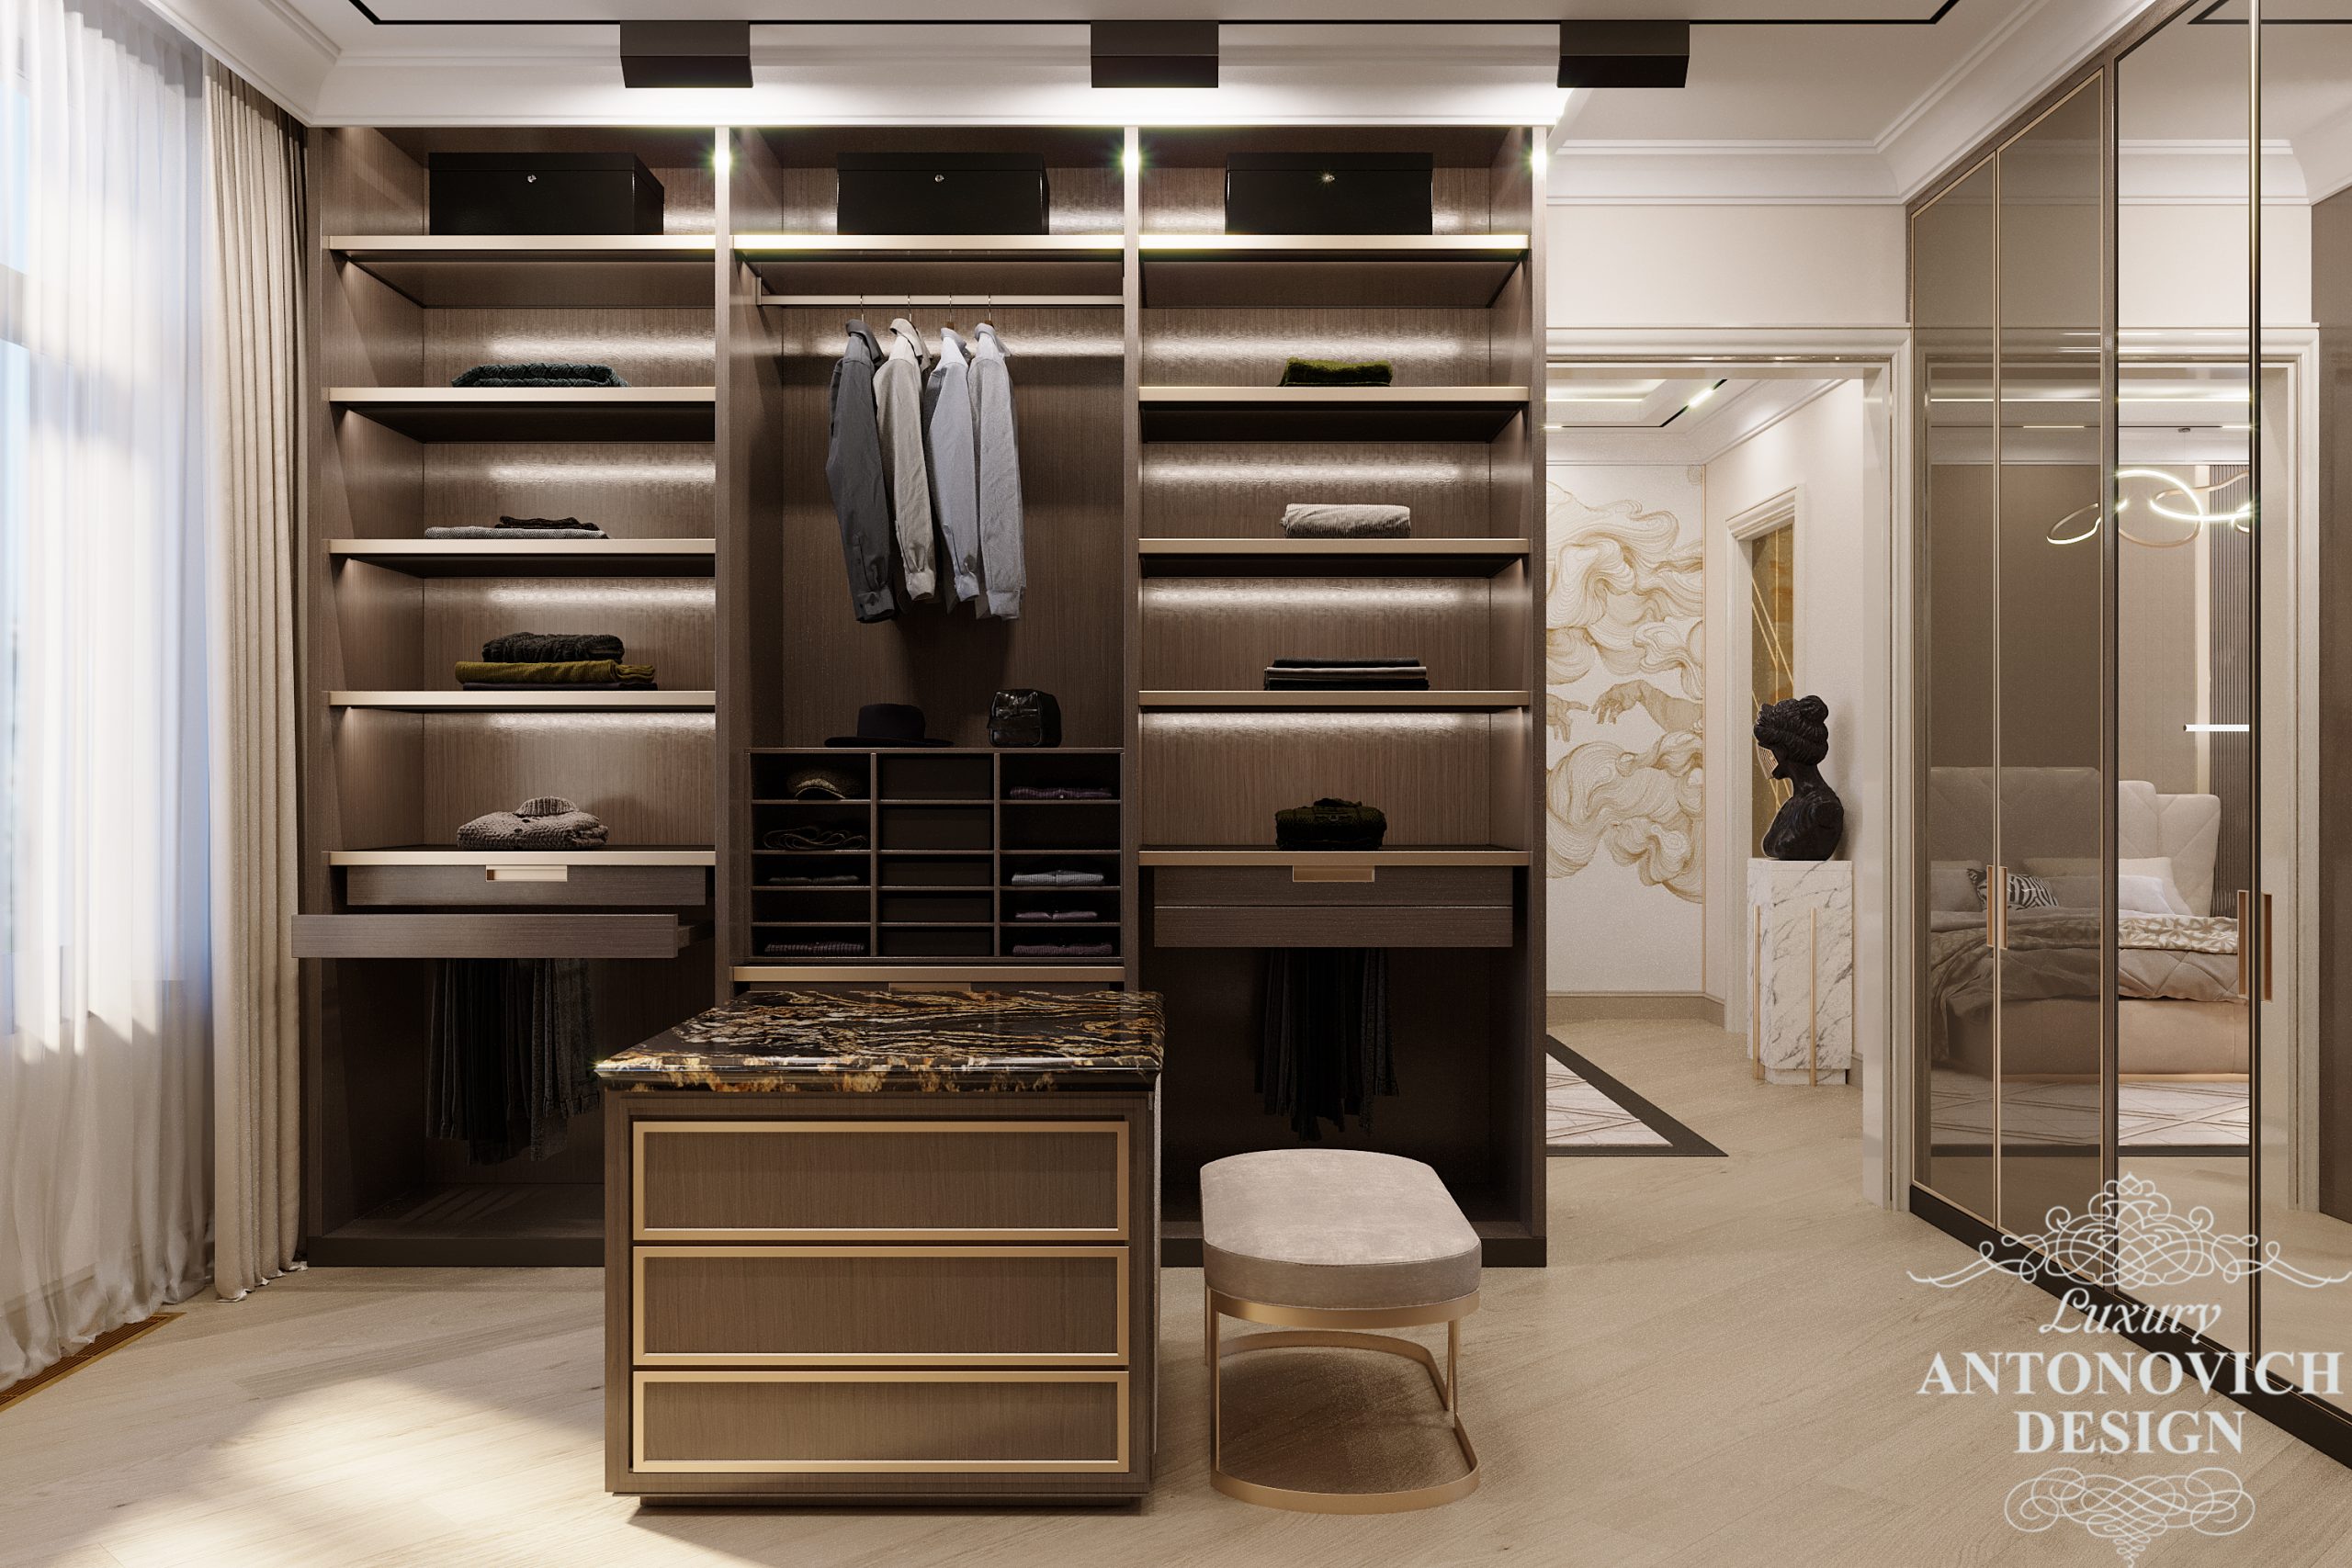 Мрамор и яркая подсветка в дизайн-проекте гардероба в интерьере просторной квартиры